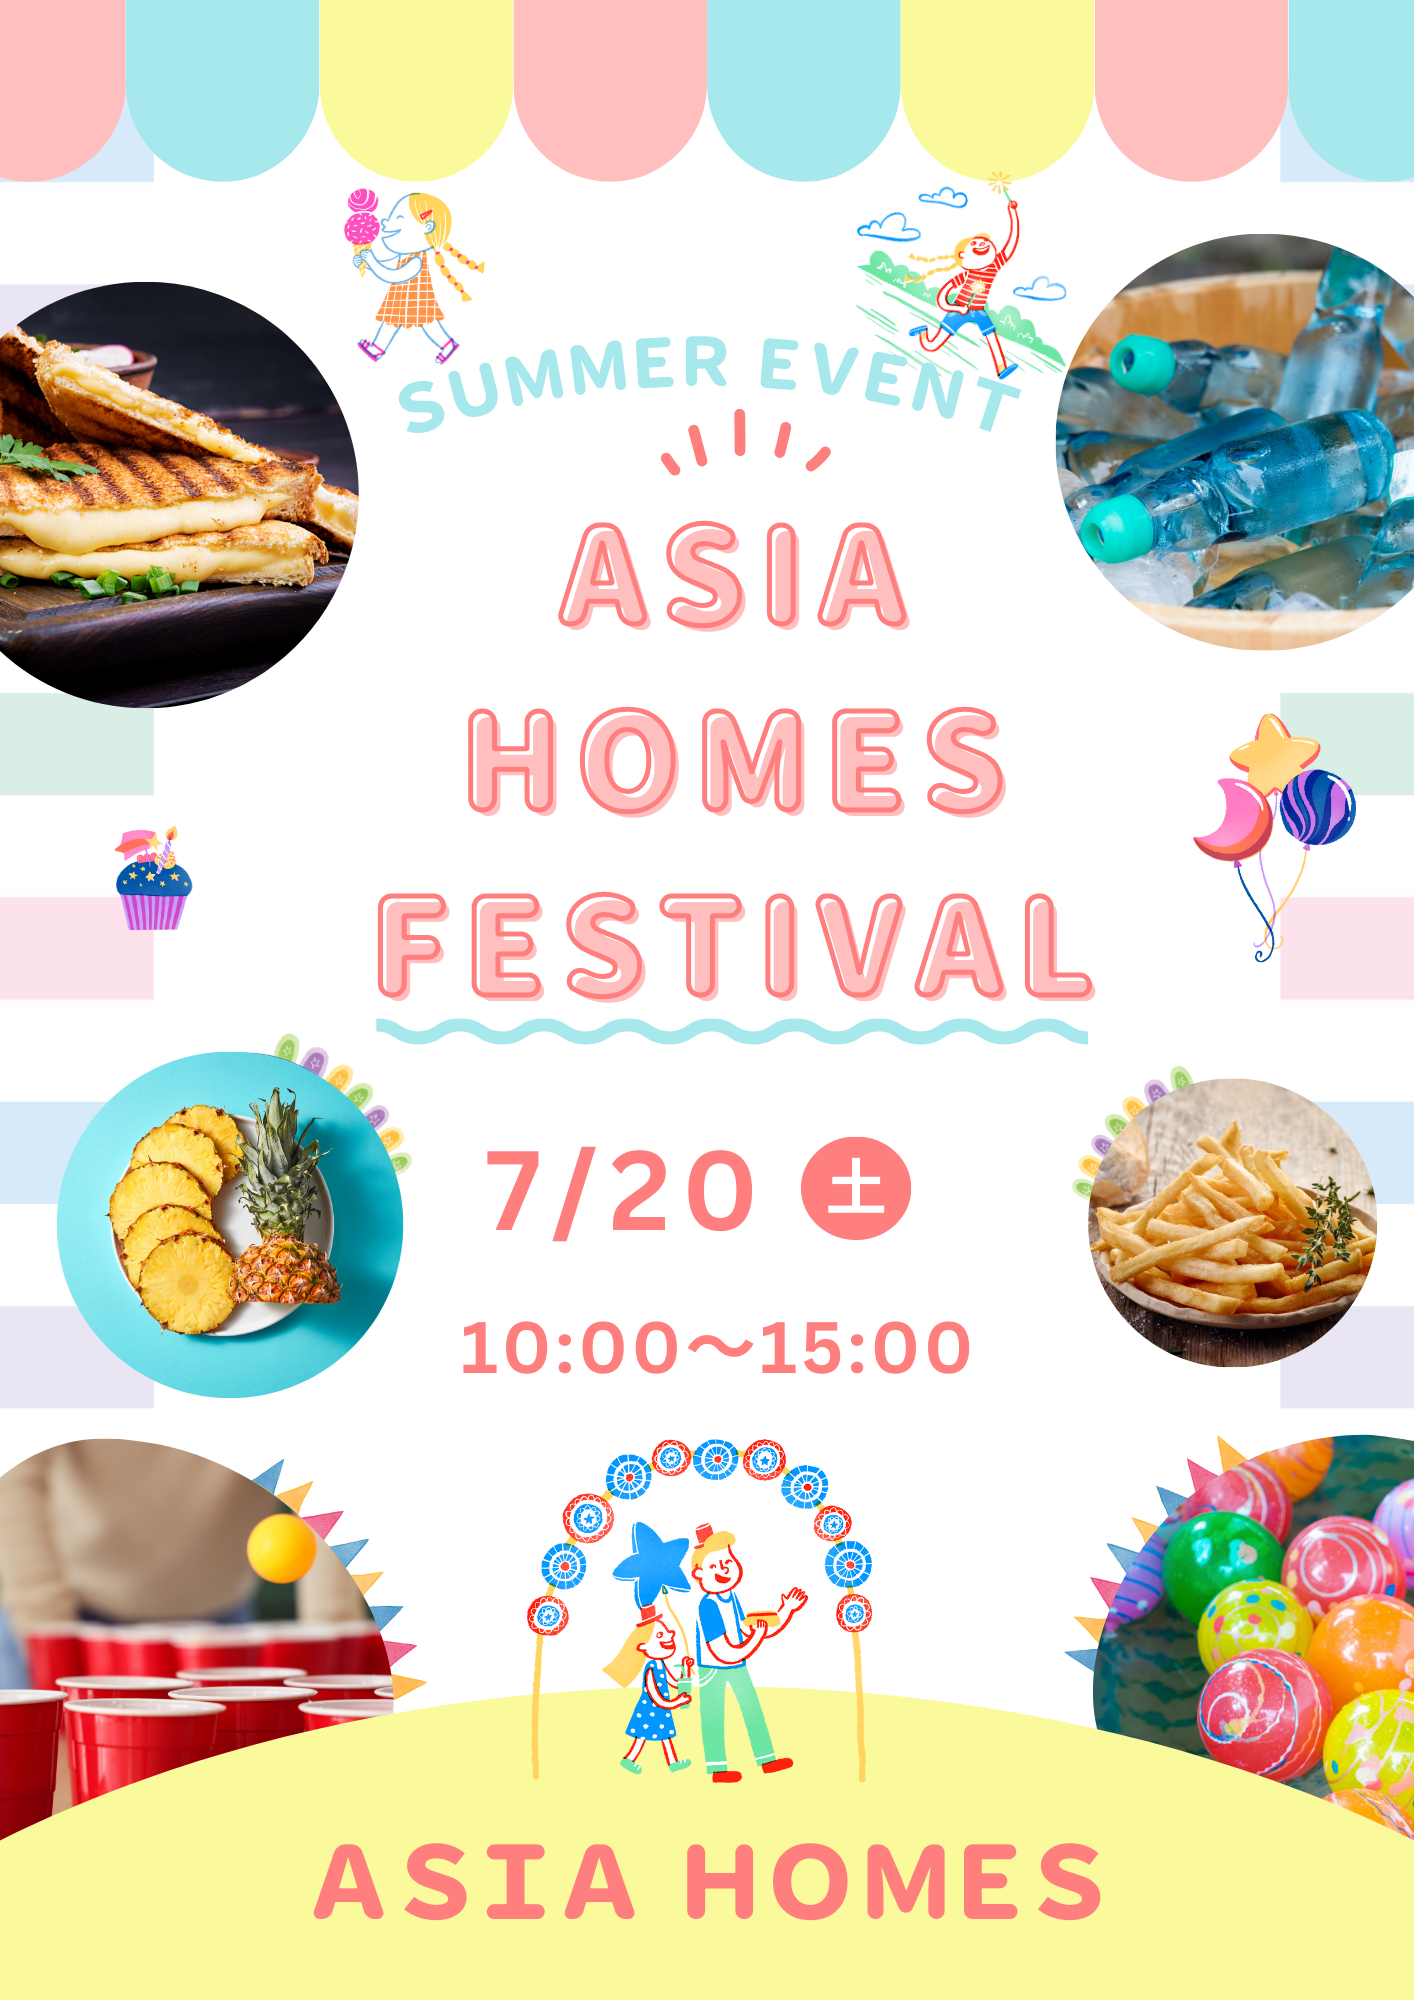 アジアホームズフェスティバル in SUMMER 開催 アイキャッチ画像